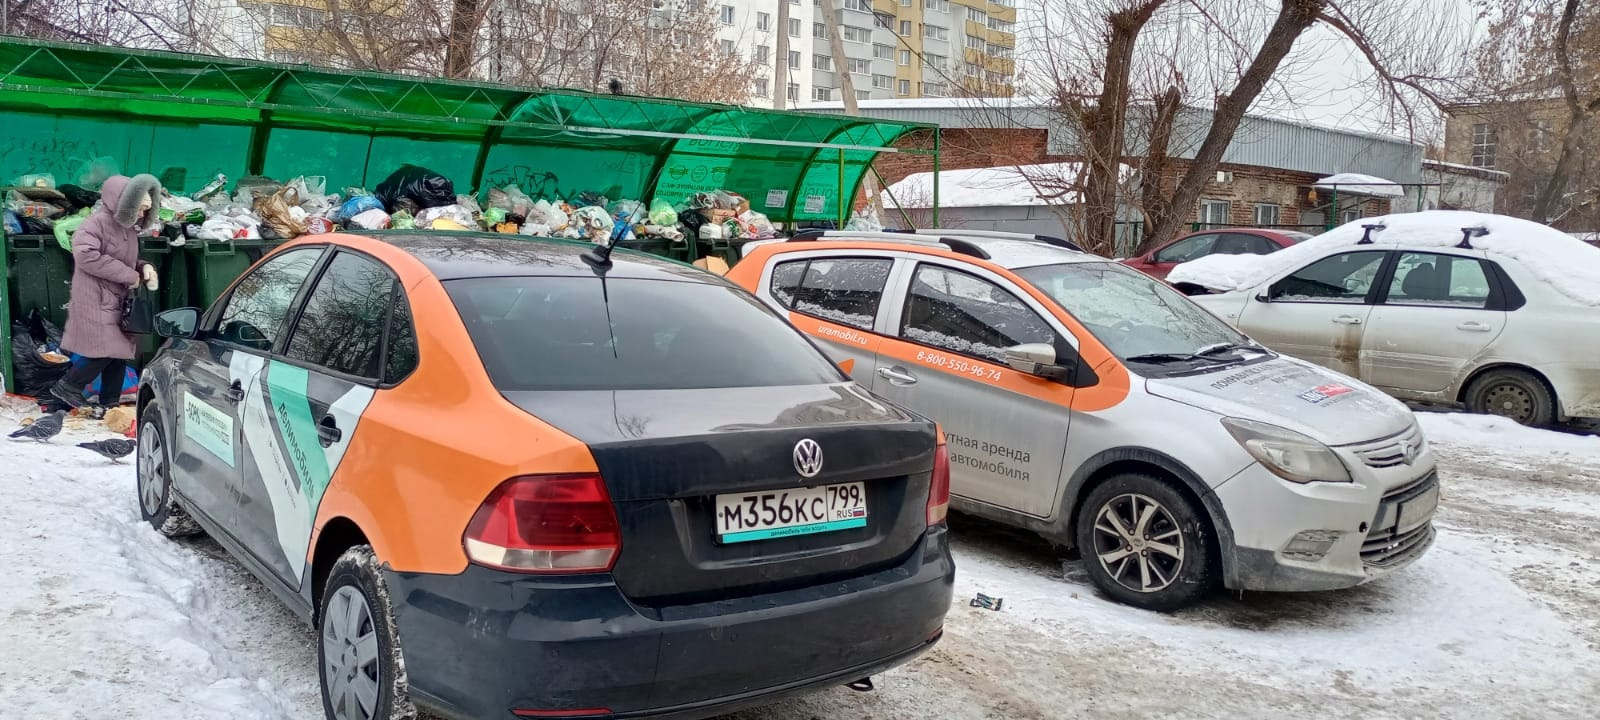 В Екатеринбурге автохамы захватывают помойки: из-за нарушителей растут горы мусора